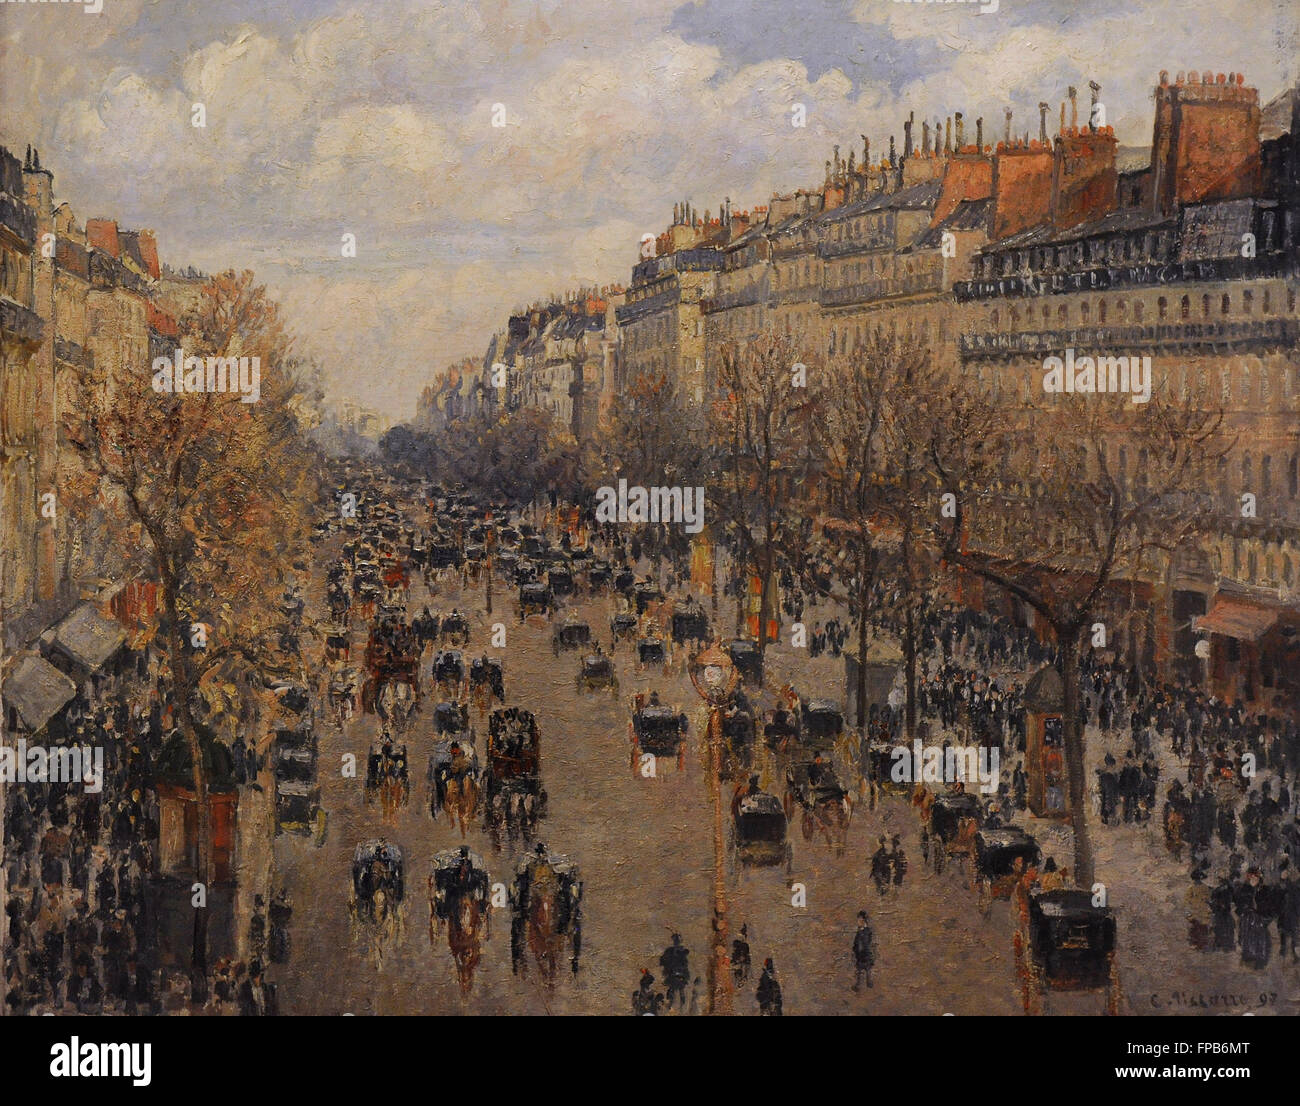 Camille Pissarro (1830-1903). Le peintre français. Boulevard Montmartre à Paris, 1897. Huile sur toile. Le Musée de l'Ermitage. Saint Petersburg. La Russie. Banque D'Images